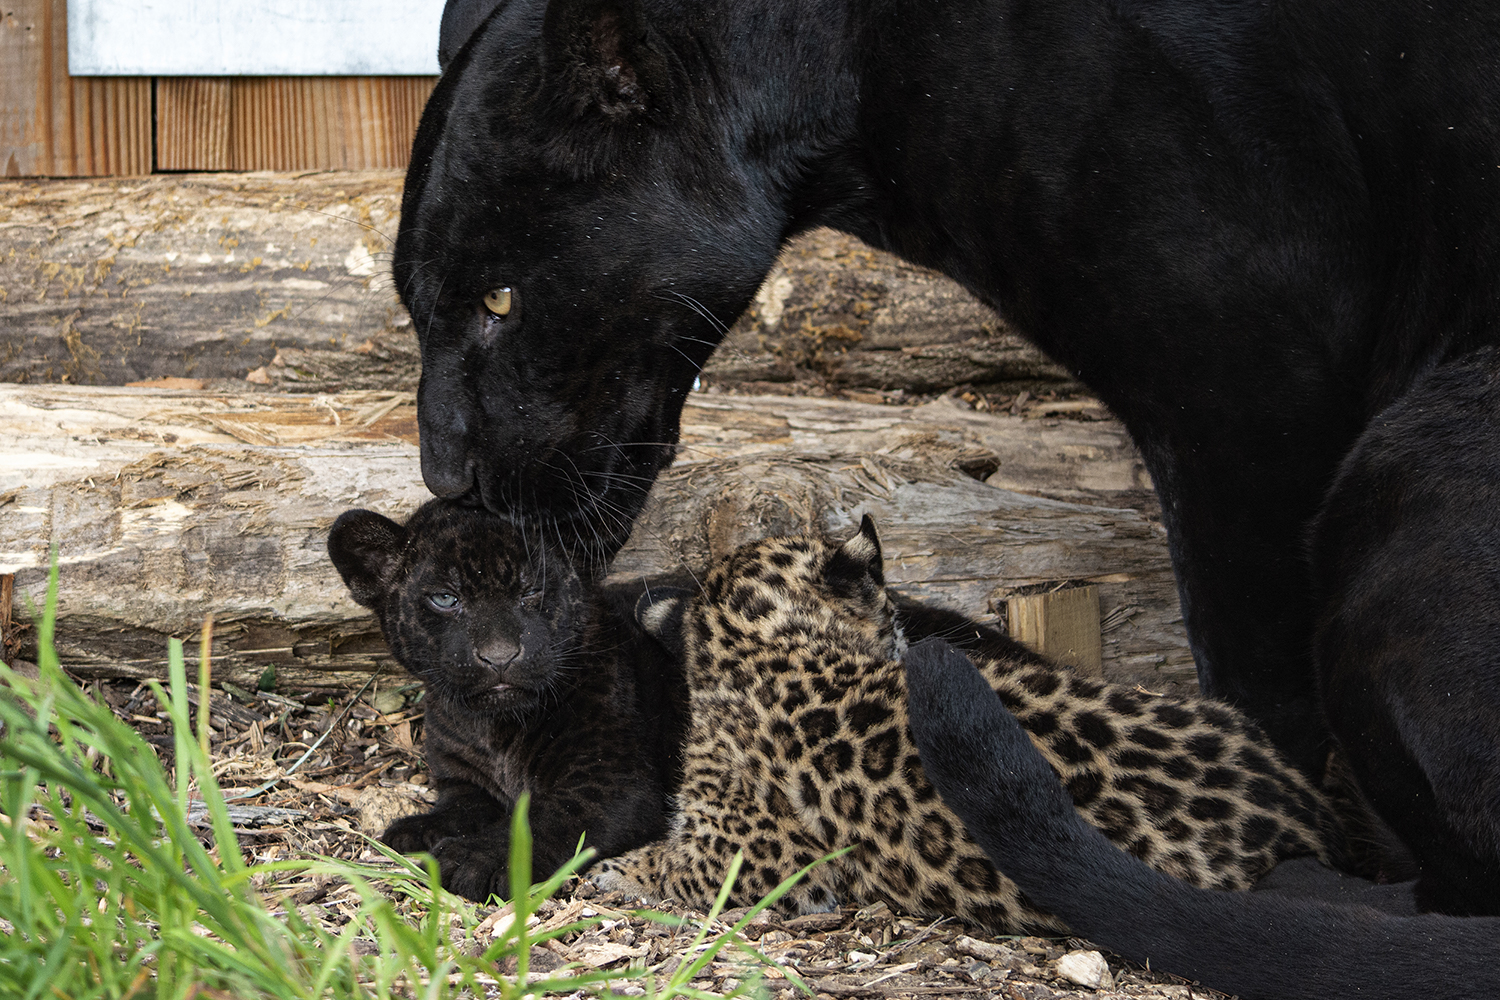 Les petits jaguars sont en parfaite santé, choyés par leur maman